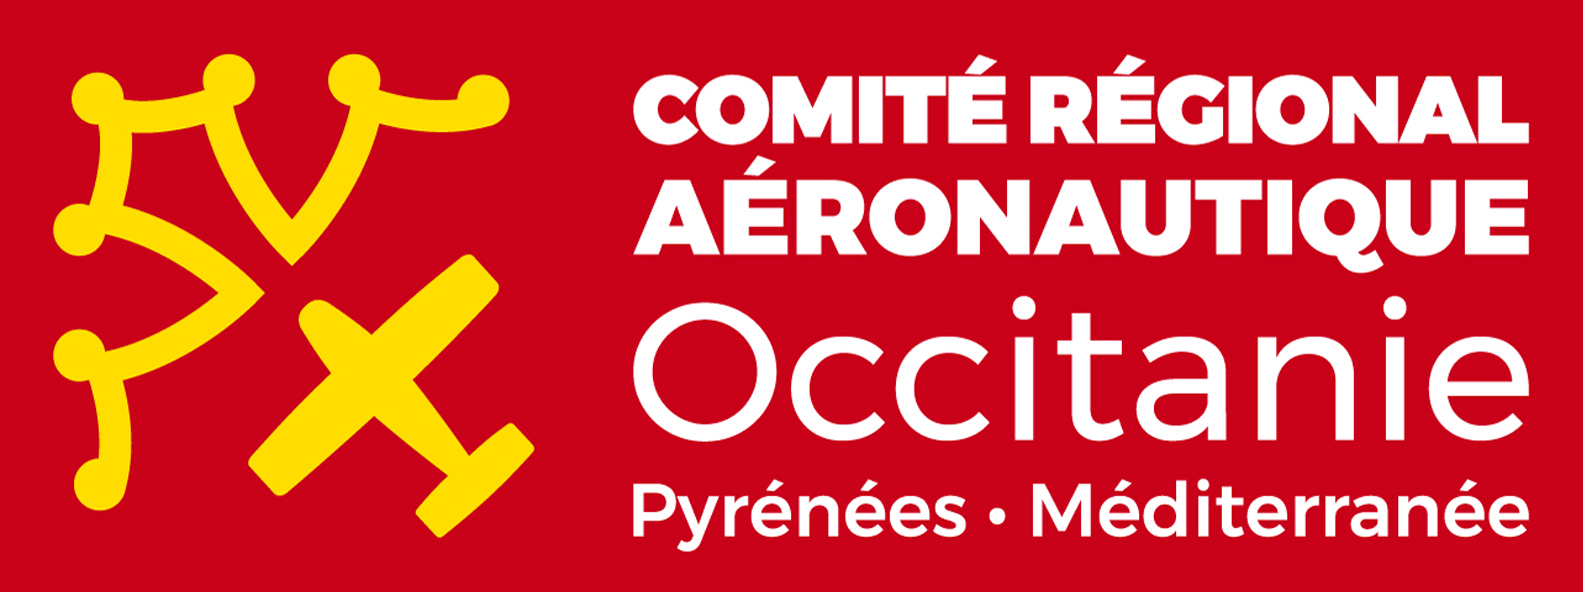 Comité régional aéronautique Occitanie 